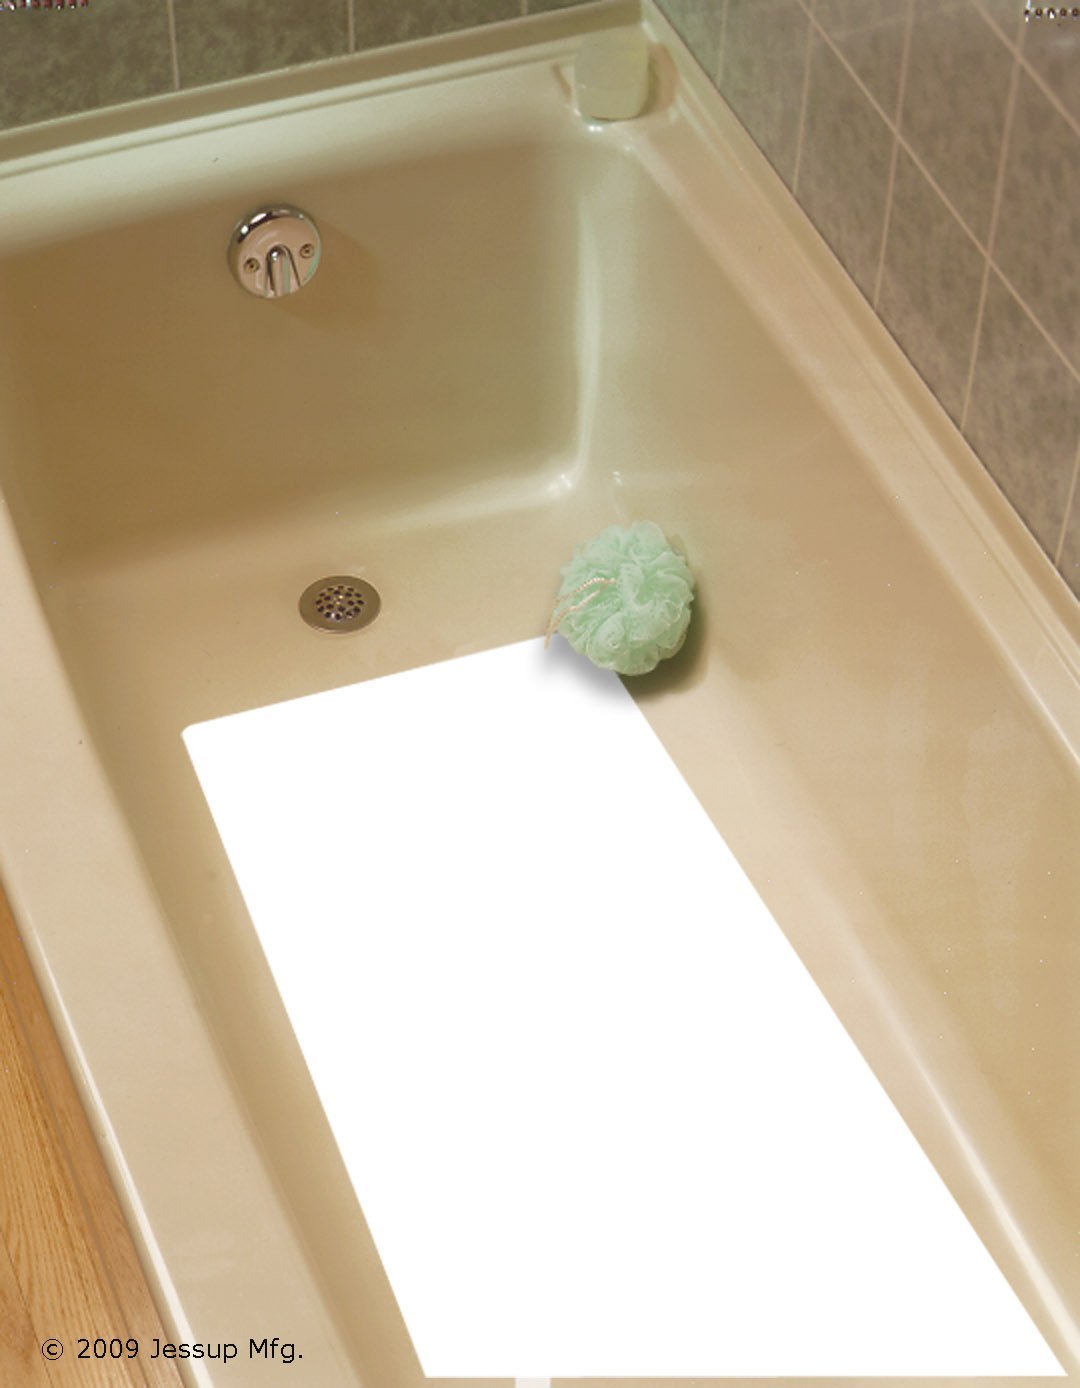 16 X 34 Jessup 4100 Vinyl Non-Slip Tub Adhesive Bath Mat Clear